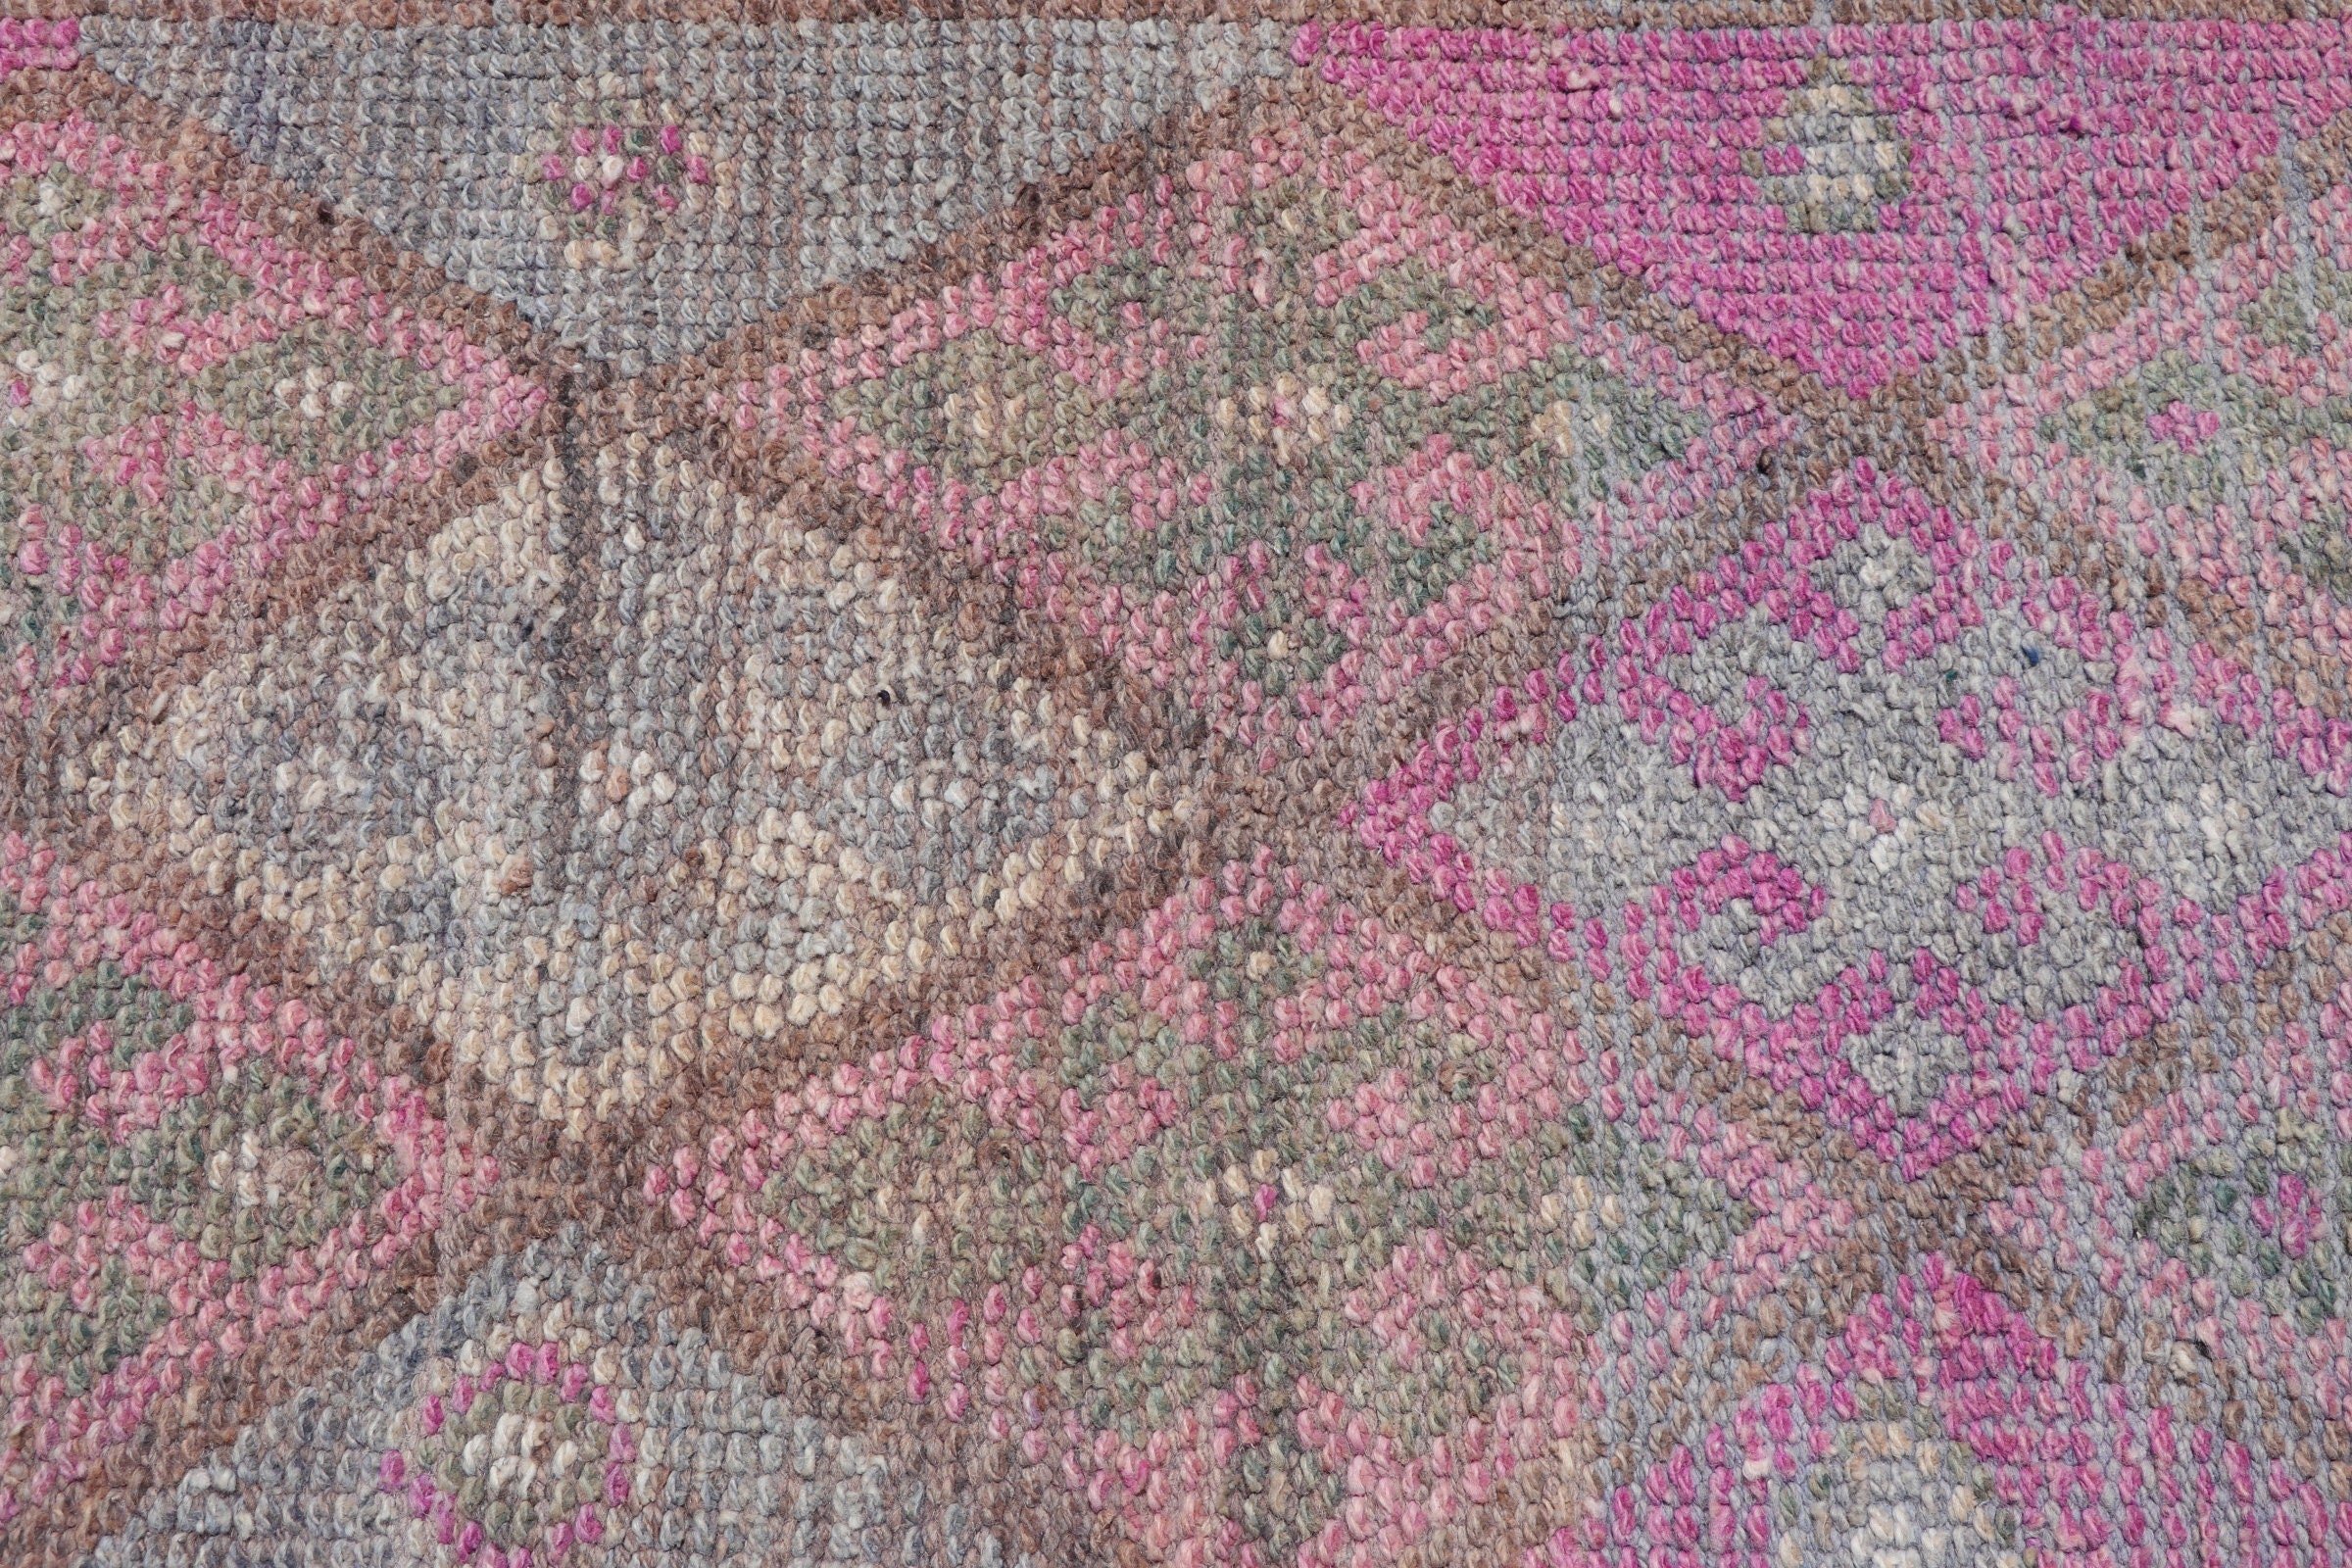 Moroccan Rug, Stair Rugs, Vintage Rugs, Pink  2.3x11.7 ft Runner Rug, Oushak Rugs, Turkish Rugs, Retro Rug, Rugs for Corridor